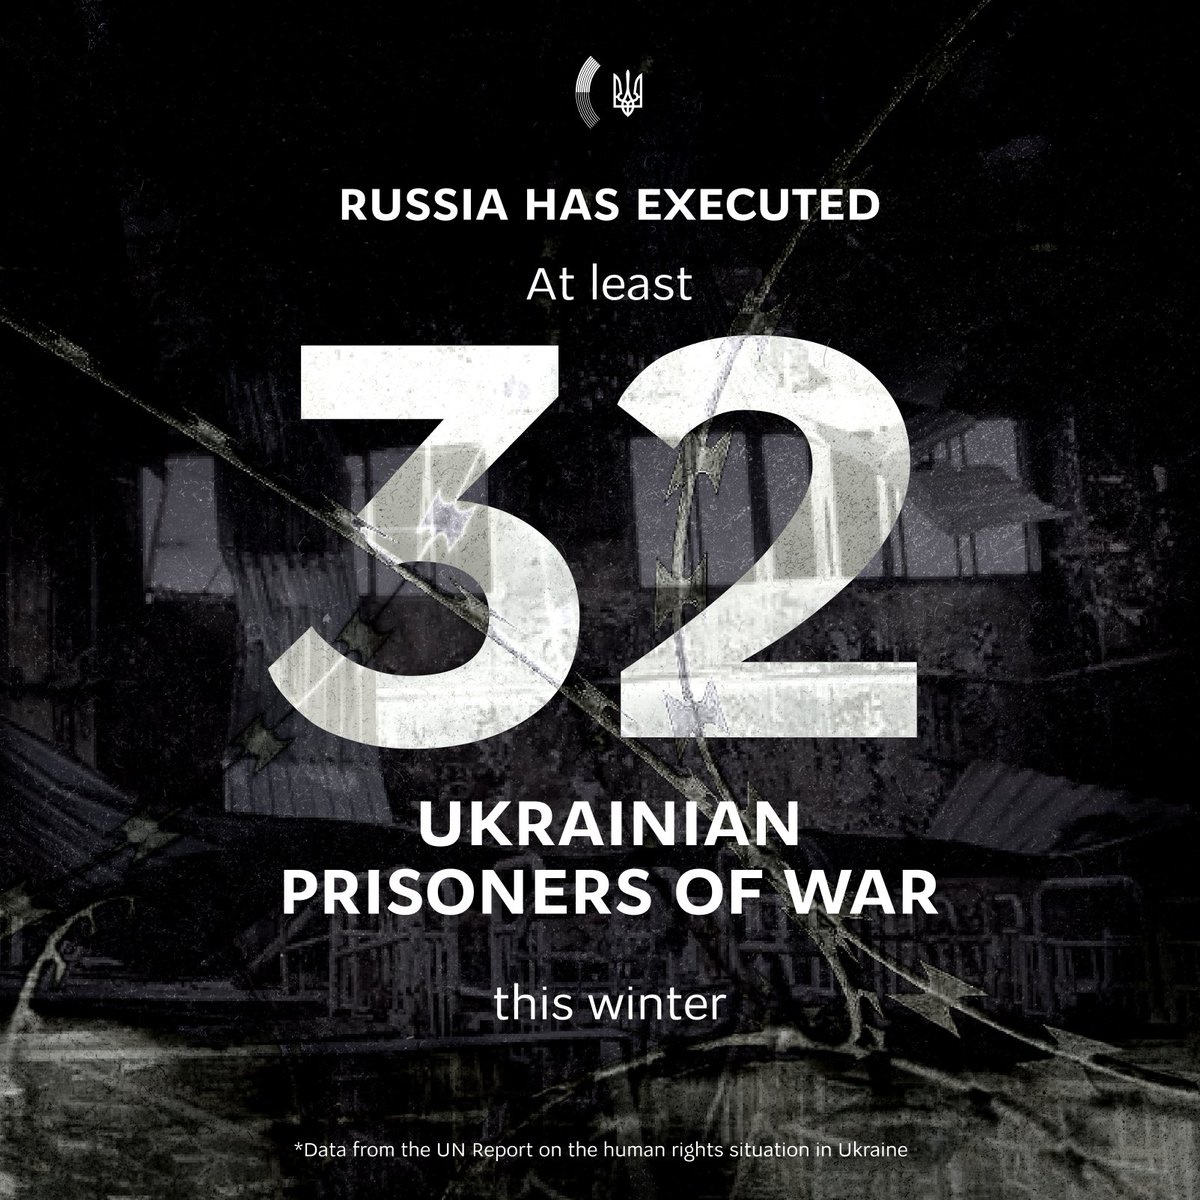 BM İnsan Hakları Yüksek Komiserliği'nin bildirdiğine göre Rusya sadece 3 ay içinde 32 Ukraynalı savaş esirini idam etti. Rusya, savaş esirlerini sadece korkunç koşullarda tutmakla kalmıyor, aynı zamanda onları yaşam haklarından da mahrum bırakıyor. #RusyaIsATerroristState